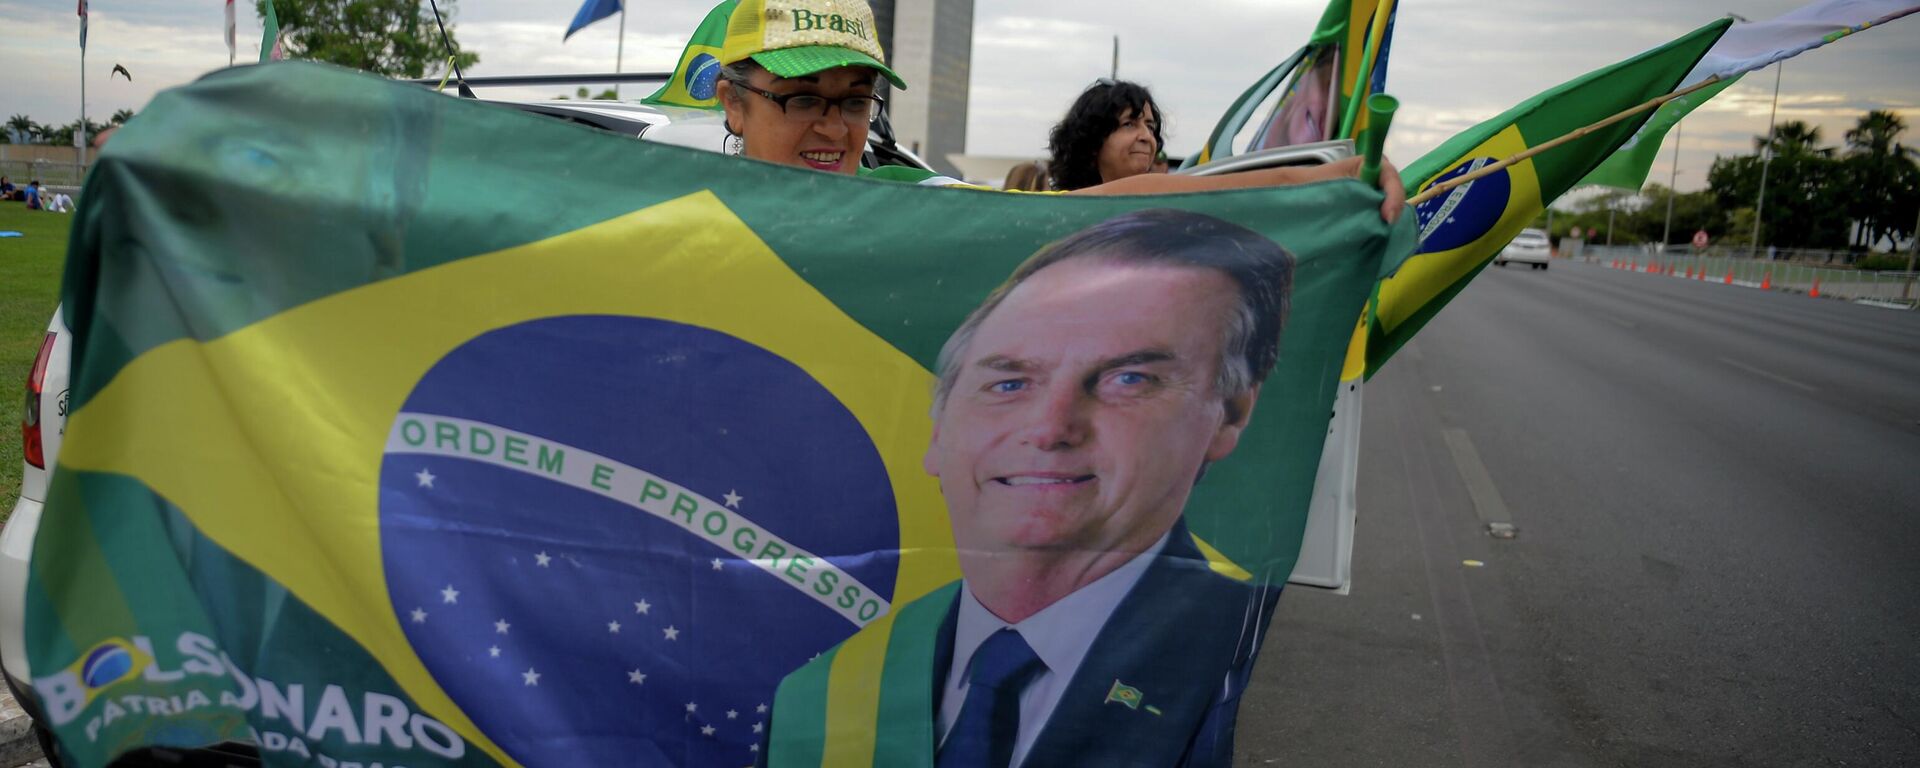 Una mujer sostiene una bandera con la imagen del presidente de Brasil, Jair Bolsonaro en las elecciones presidenciales - Sputnik Mundo, 1920, 14.10.2022